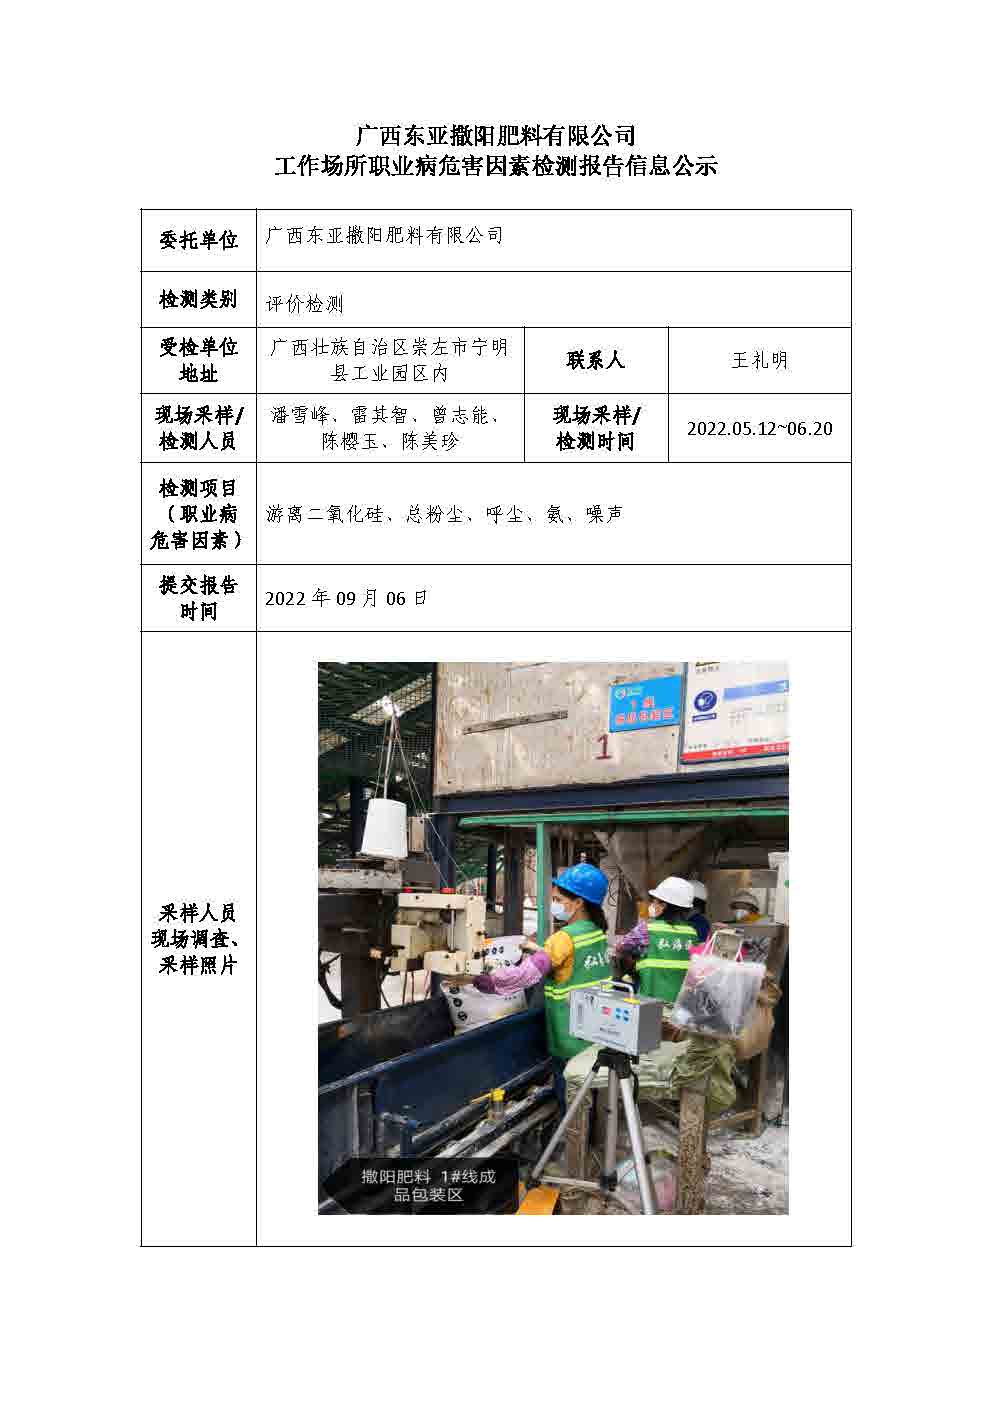 广西东亚撒阳肥料有限公司工作场所职业病危害因素检测报告信息公示